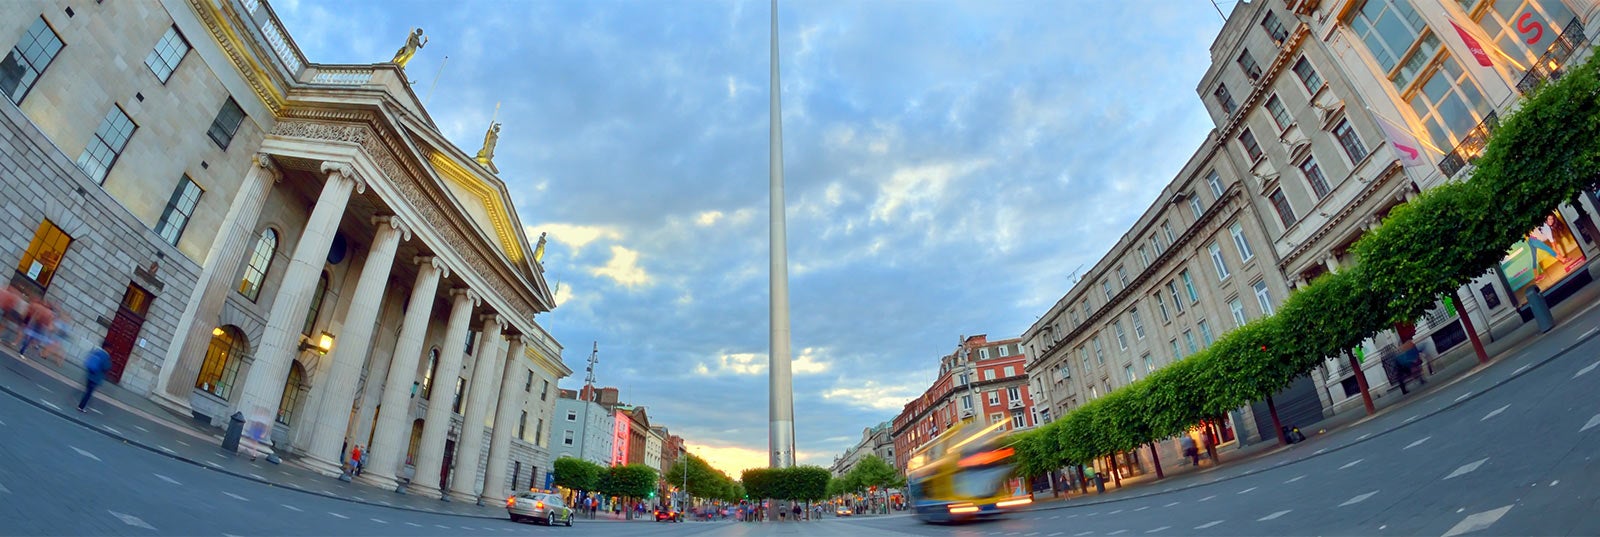 Guía turística de Dublin